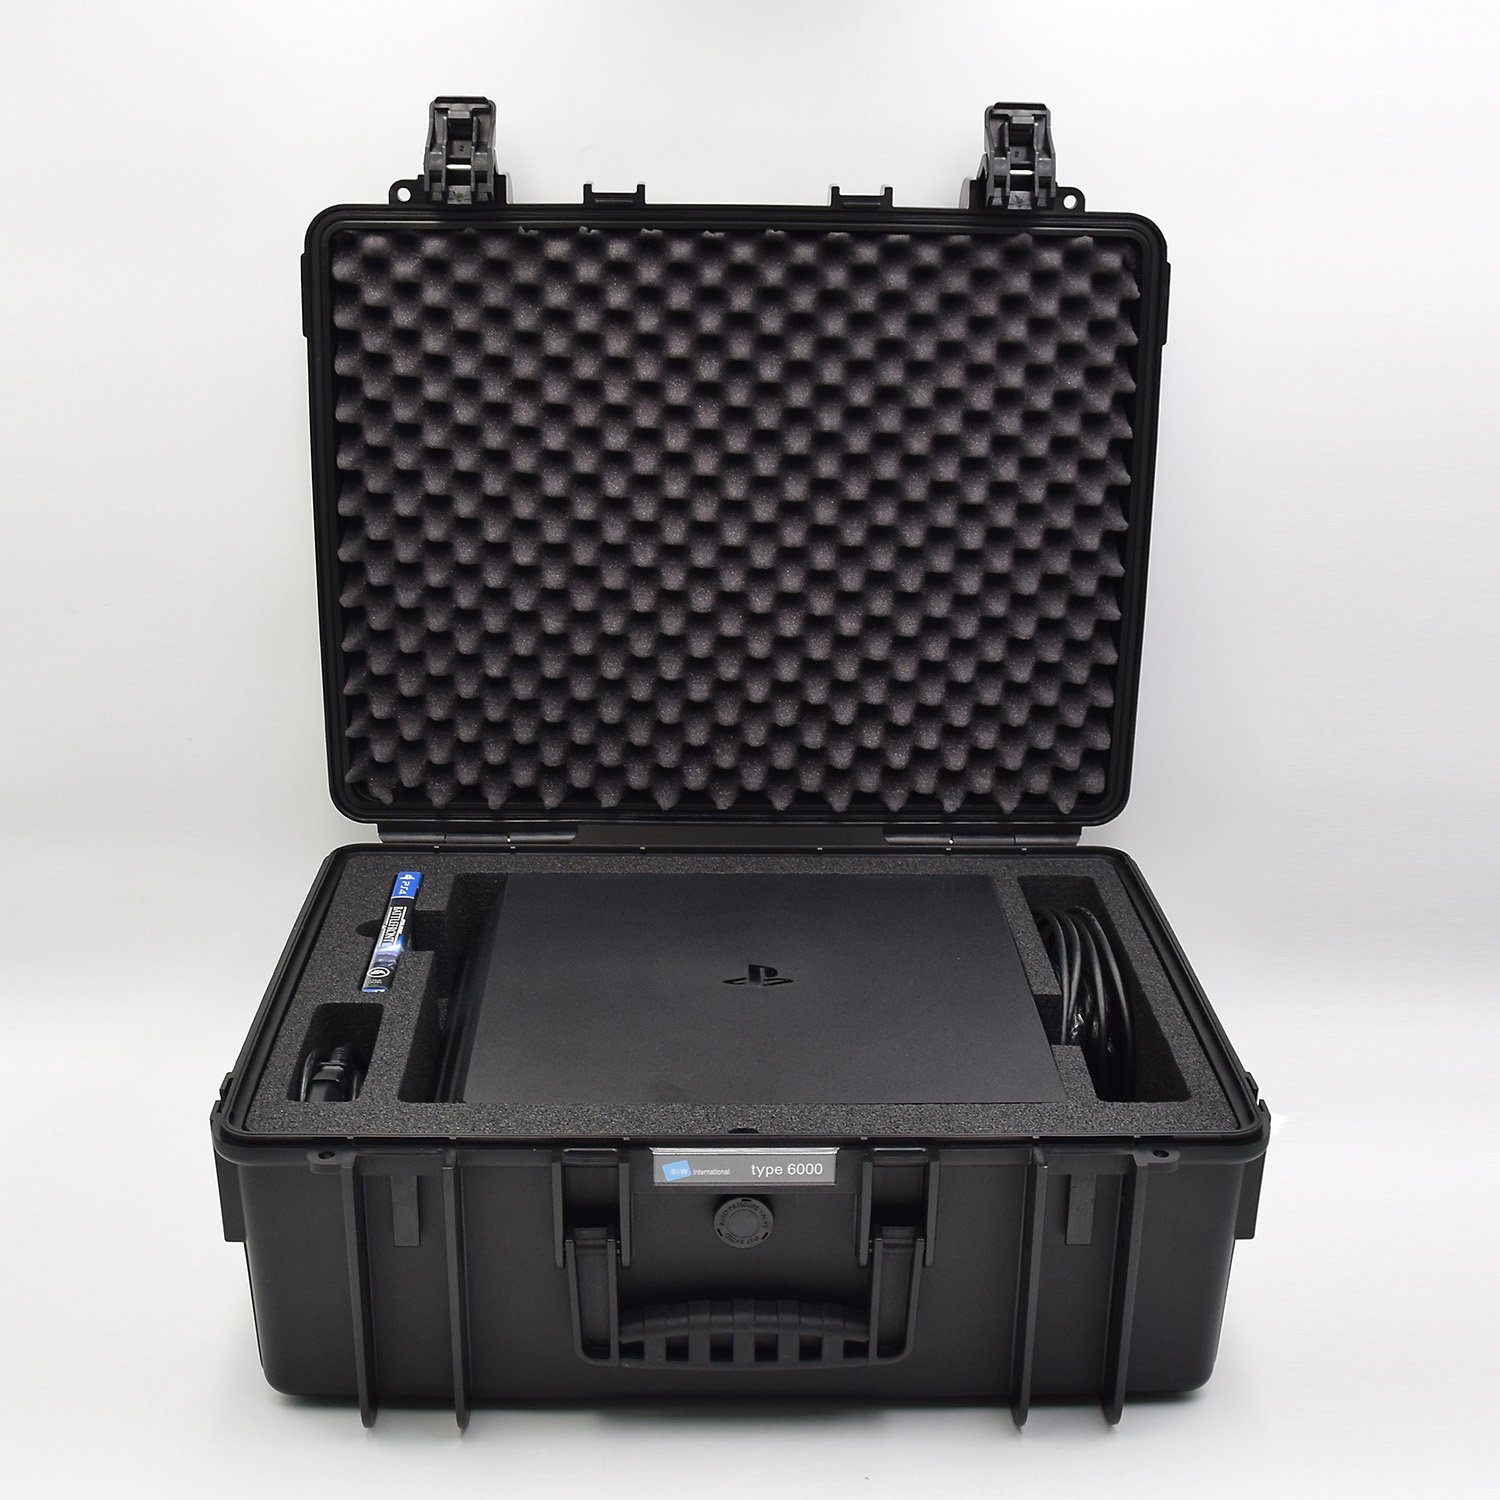 CXP Spielekonsolen-Tasche caseXpert 6K - Koffer für PlayStation 4 Pro  Spiele-Konsole & Zubehör - 50 x 42 x 21 cm, Schutz & Aufbewahrung